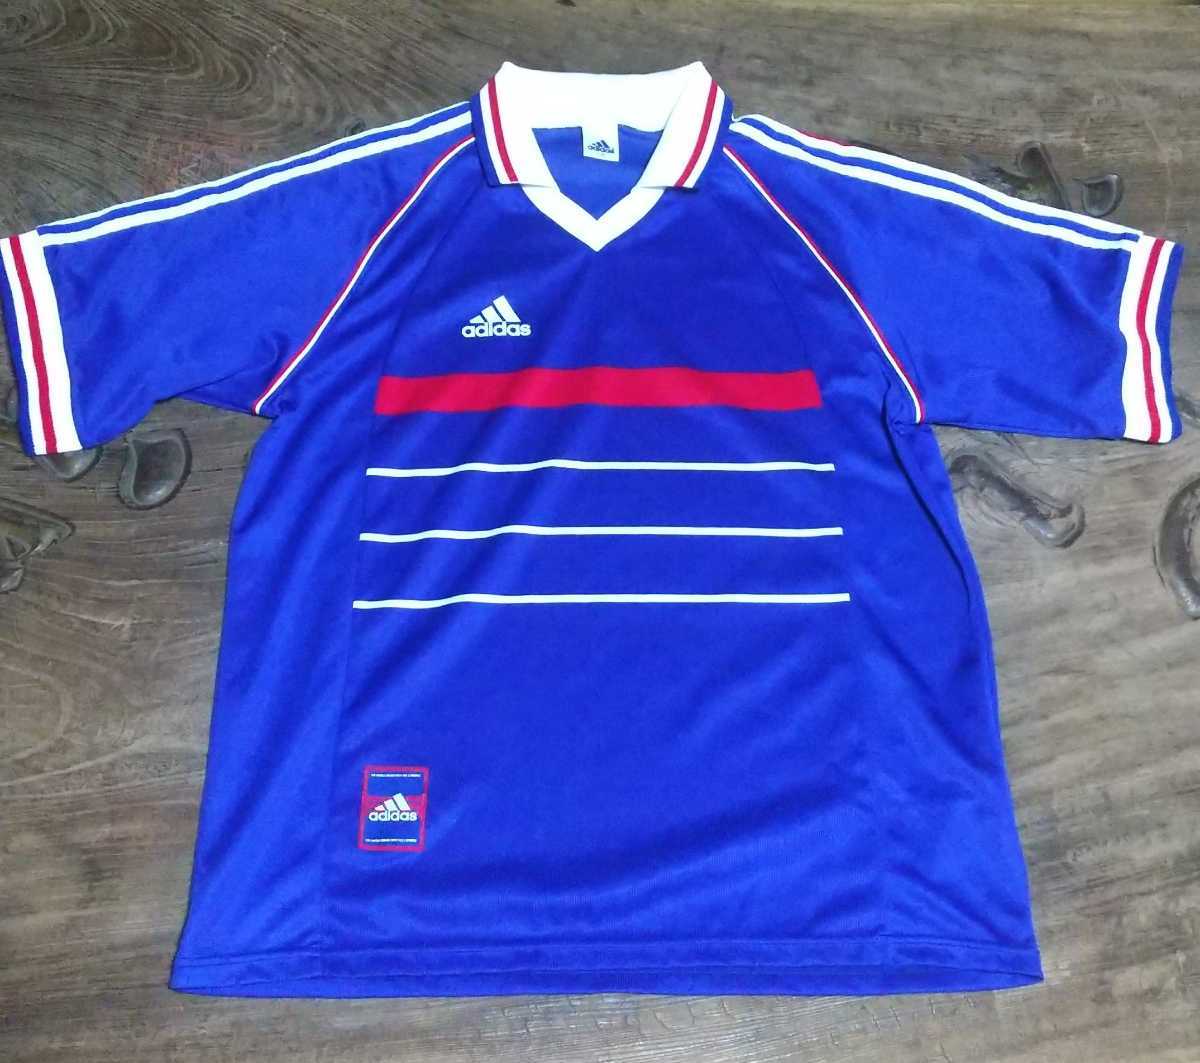 値下げ交渉 1998年 フランス代表 清水商業 型 アディダス 日本製 ゲームシャツ ユニフォーム 検 ジダン 高校サッカー Adidas France Dinh Dk